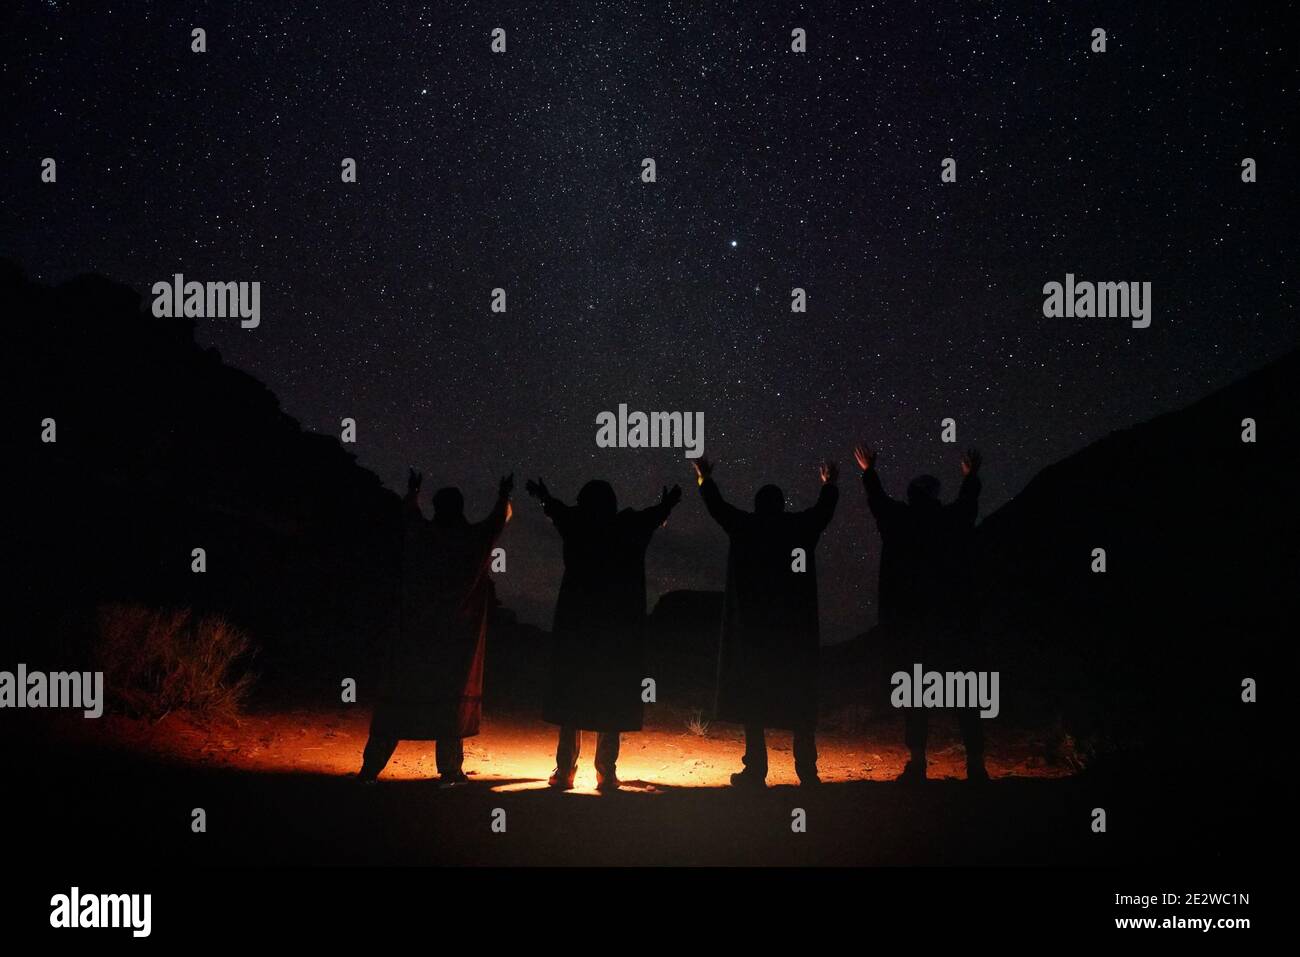 Vier Personen in langen warmen Mänteln stehen in der Nacht Wüste, Hände zum Himmel mit Sternen angehoben, Licht auf dem Boden, Blick von hinten nur Silhouetten Stockfoto